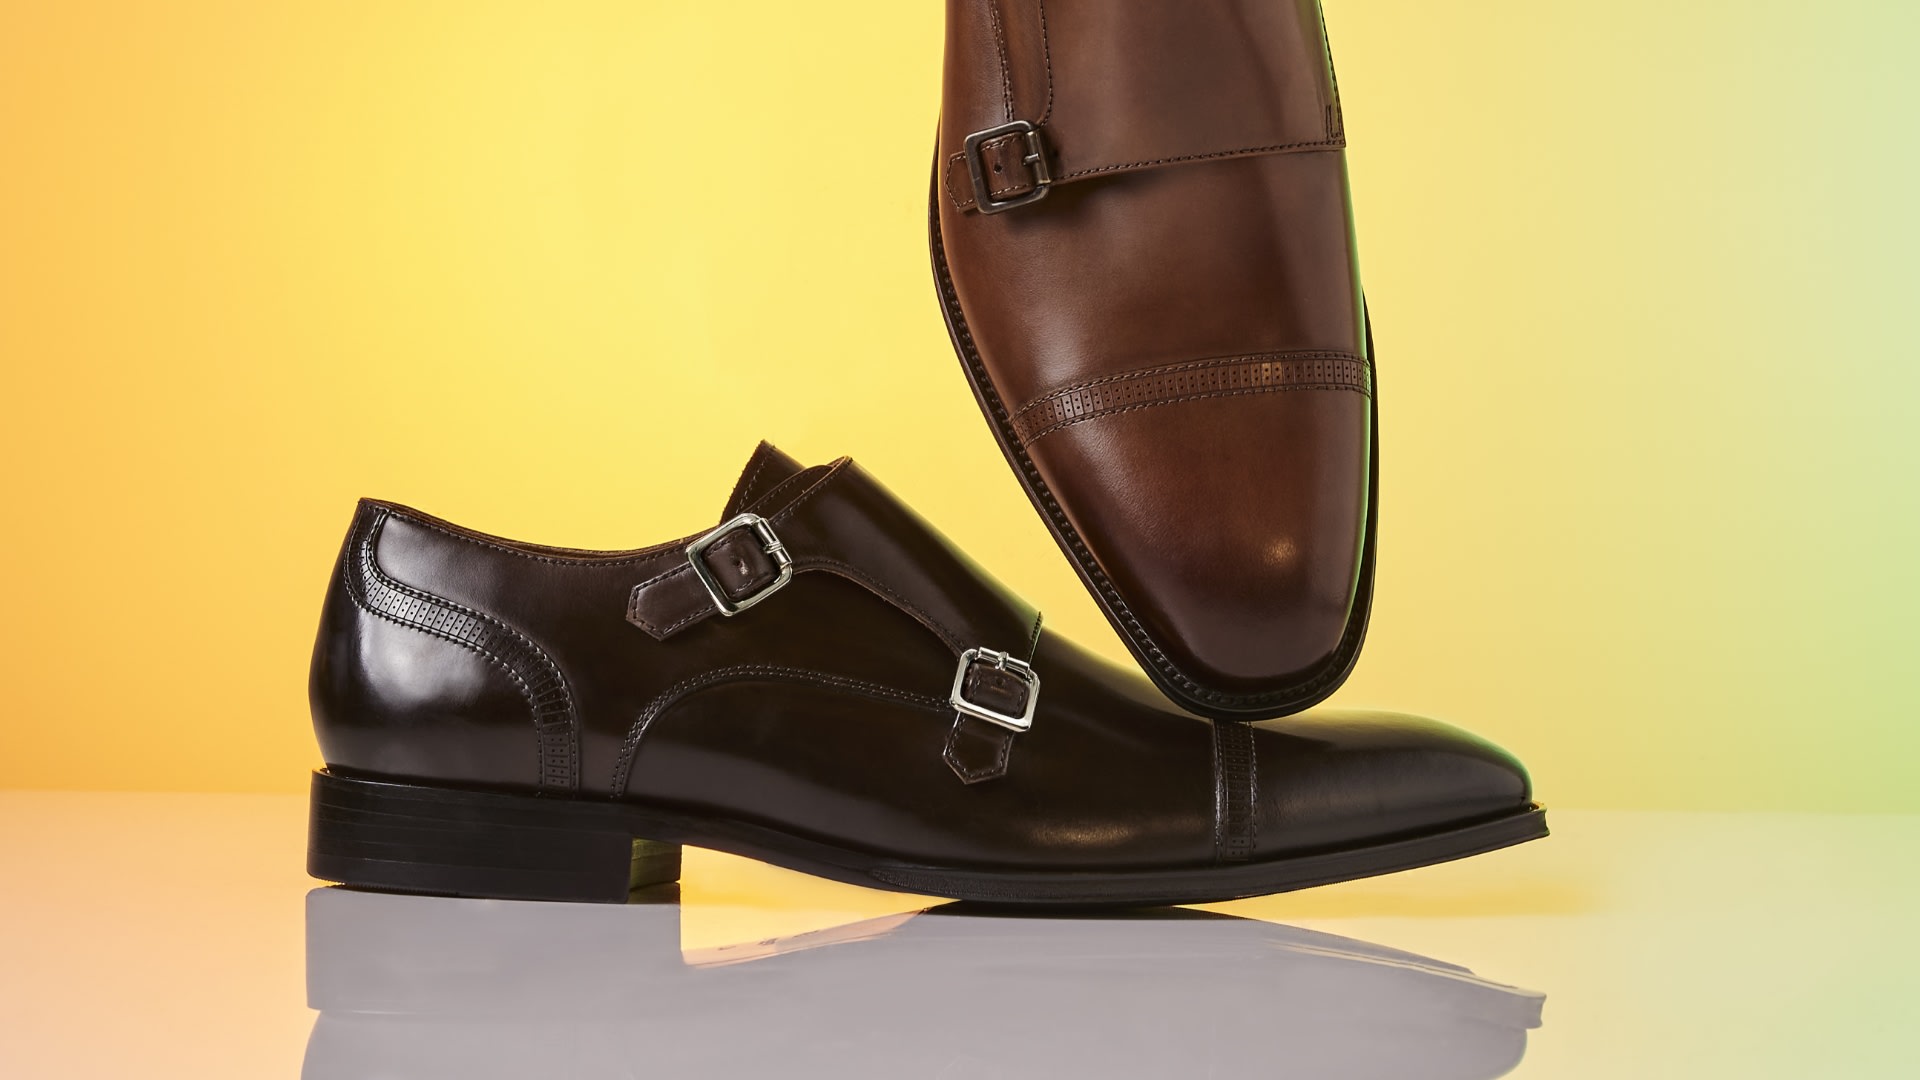 Men's smart leather monk shoes